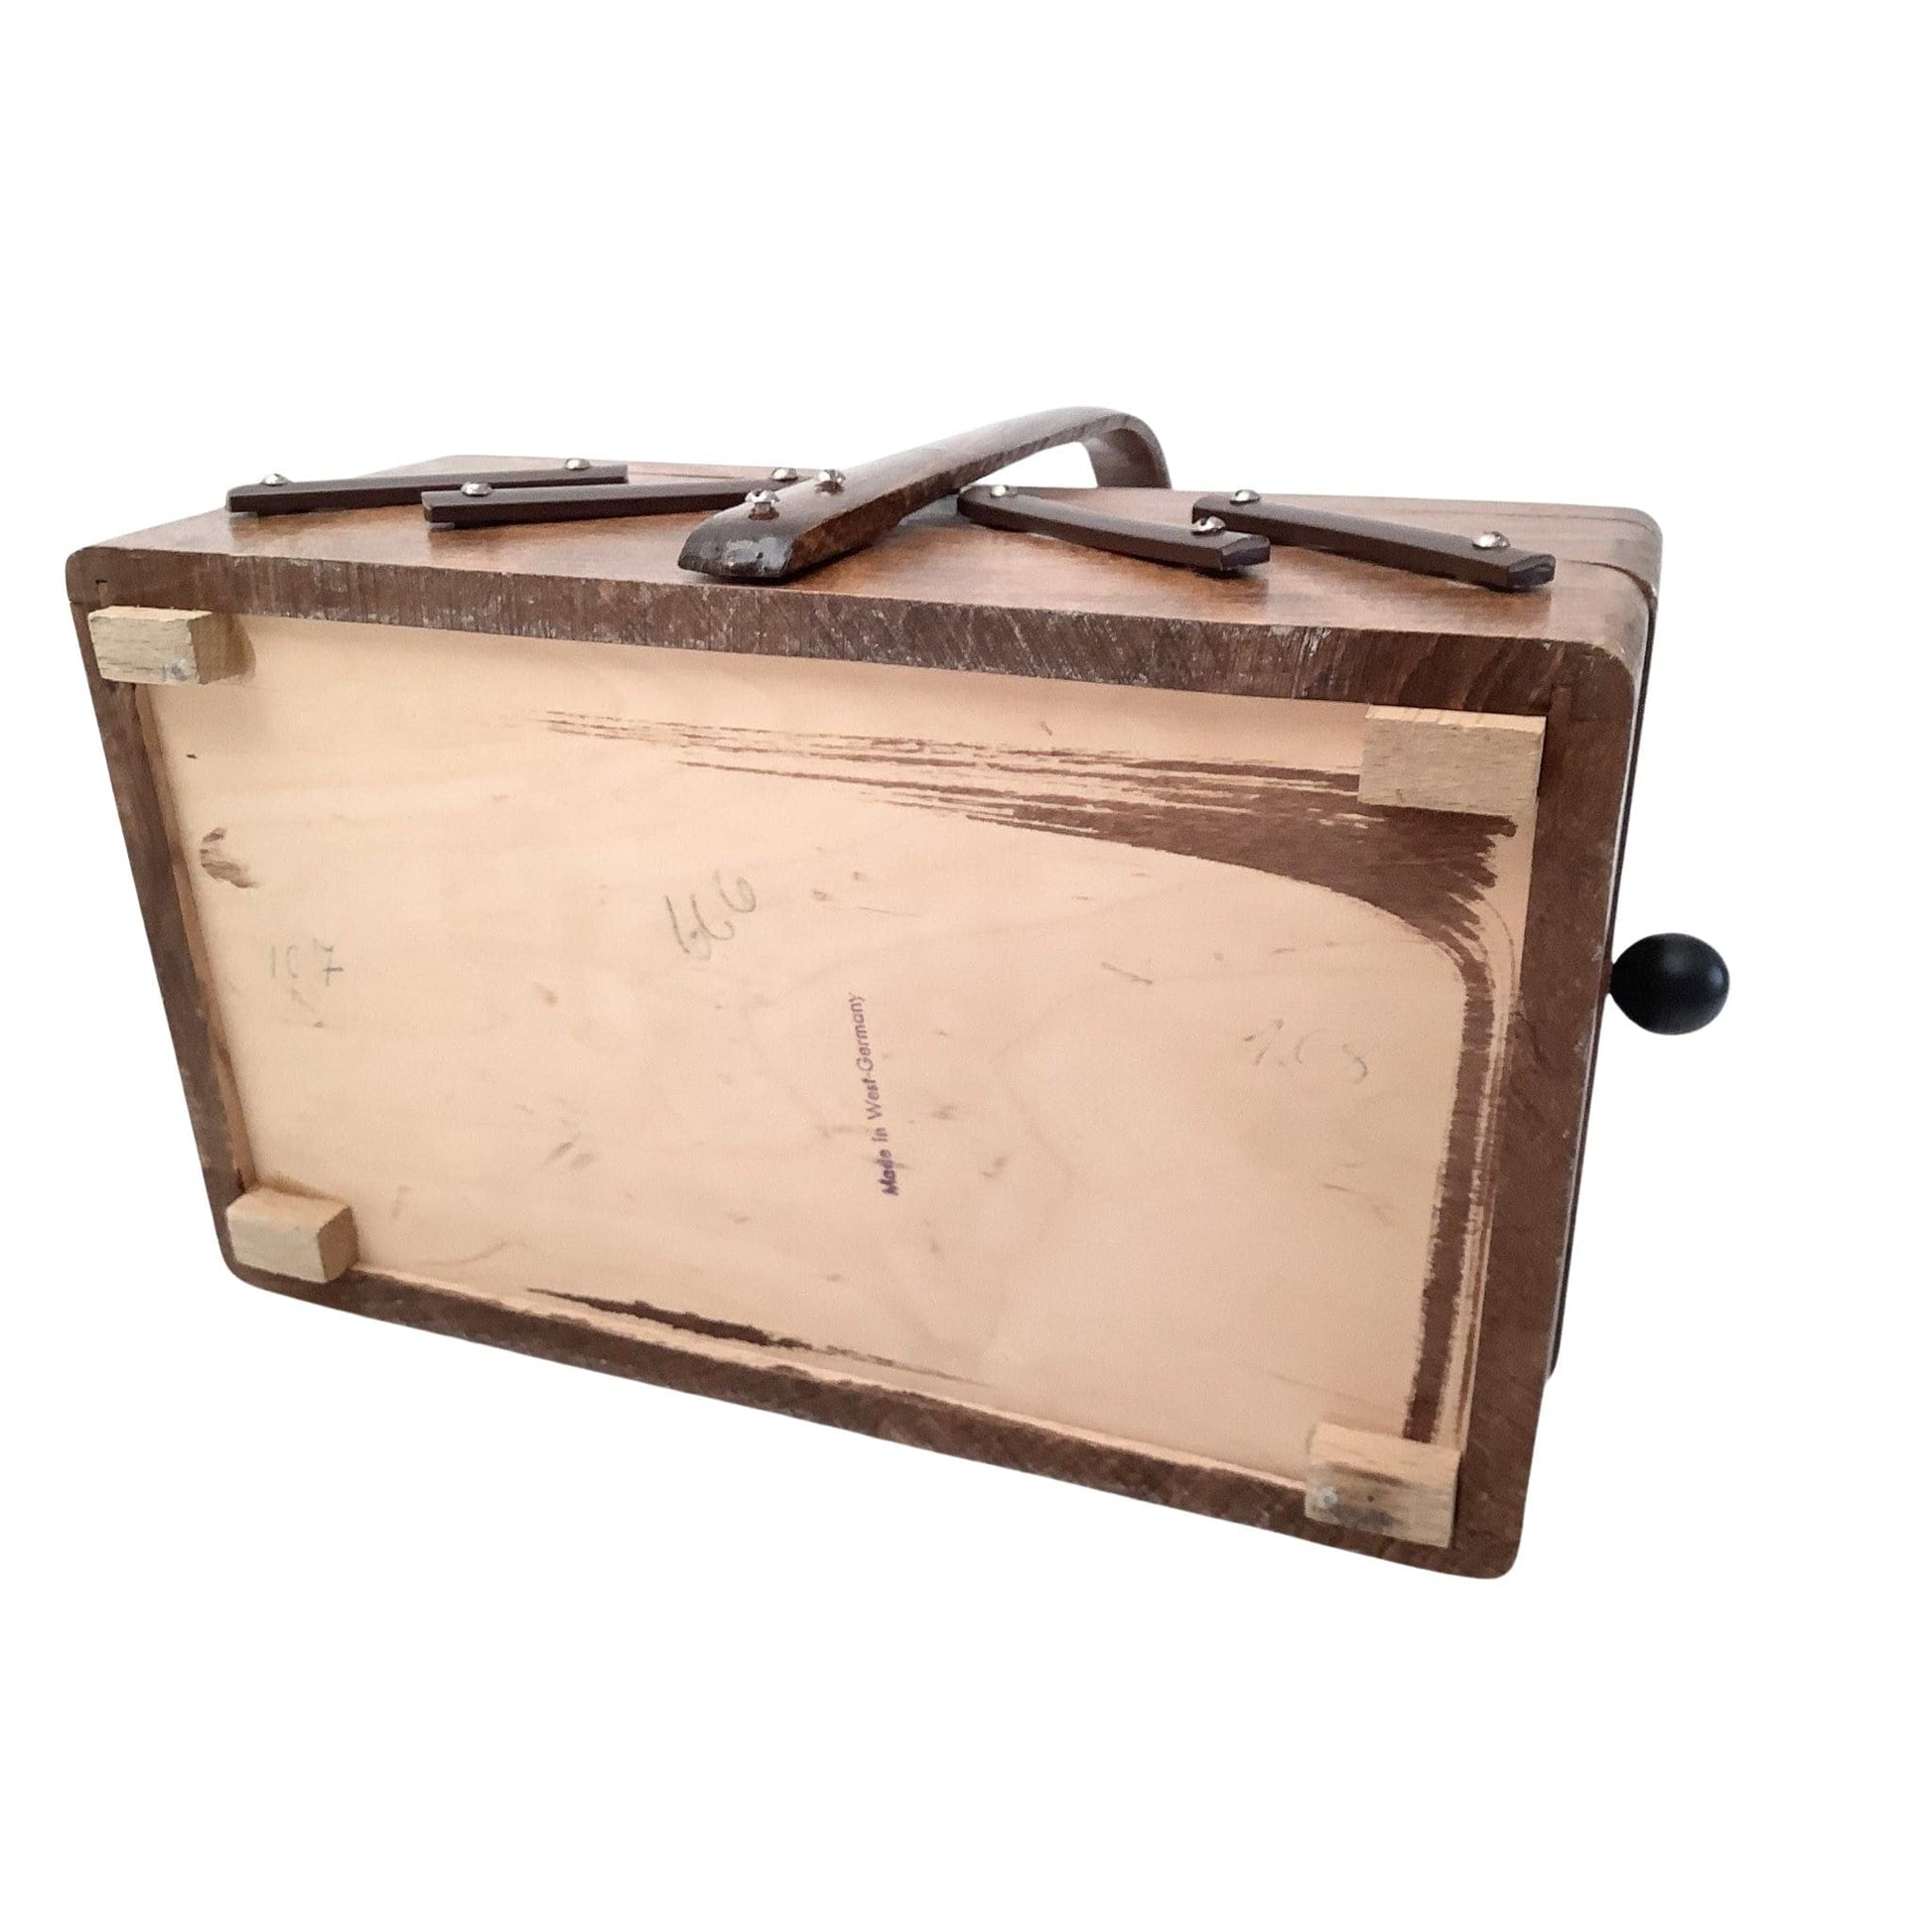 Articulated Sewing Basket Brown / Wood / Vintage 1950s